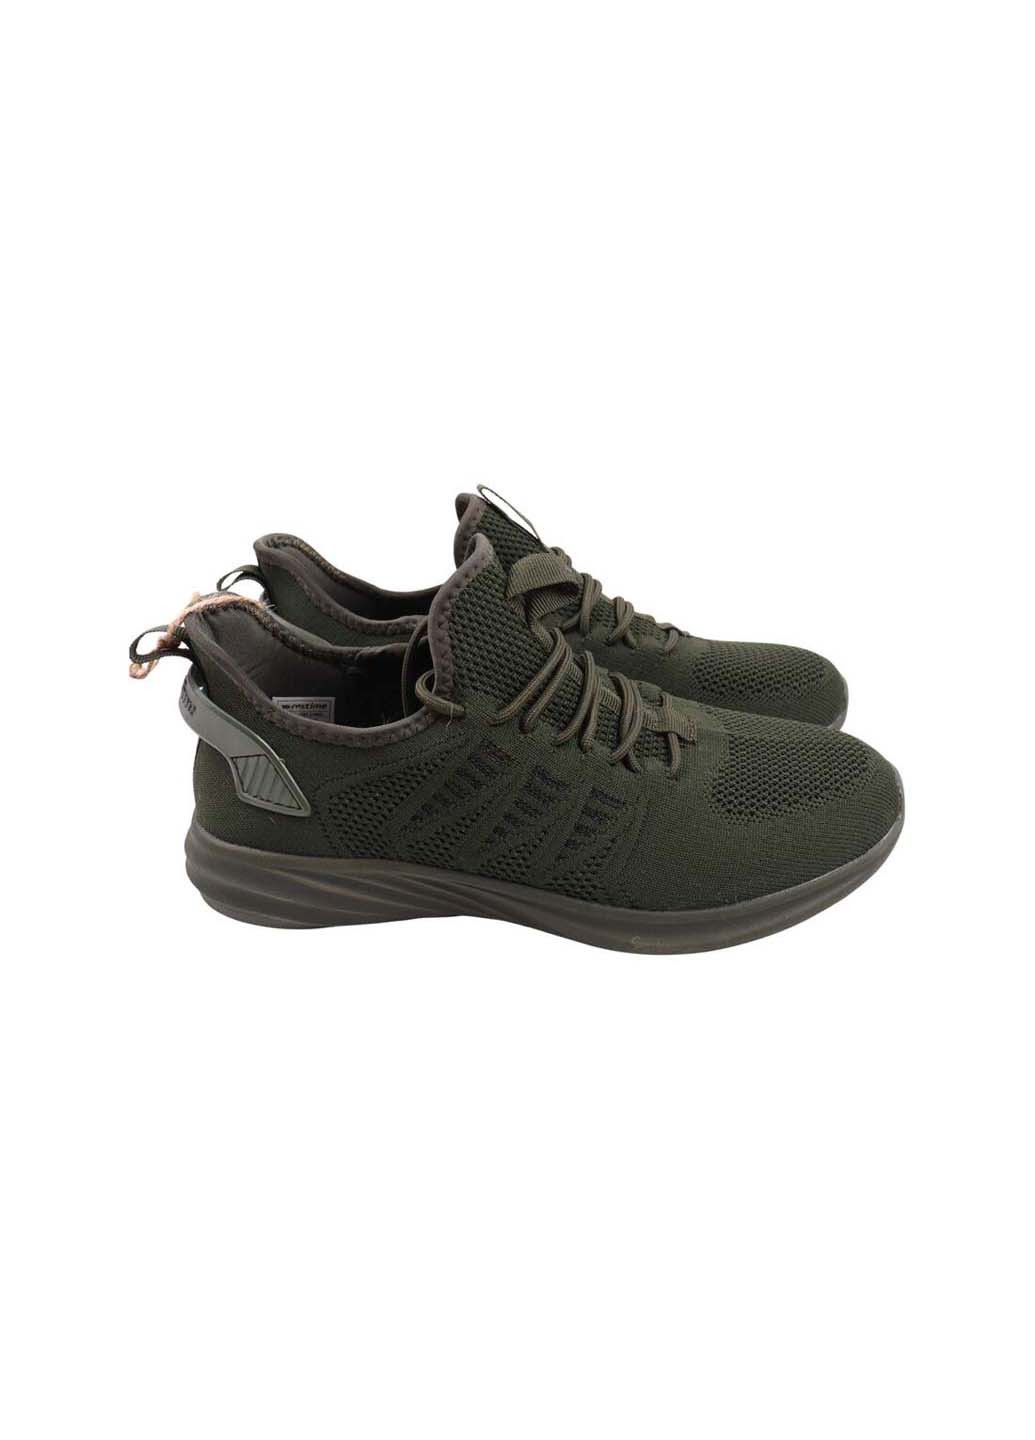 Зеленые кроссовки Restime 227-23LK